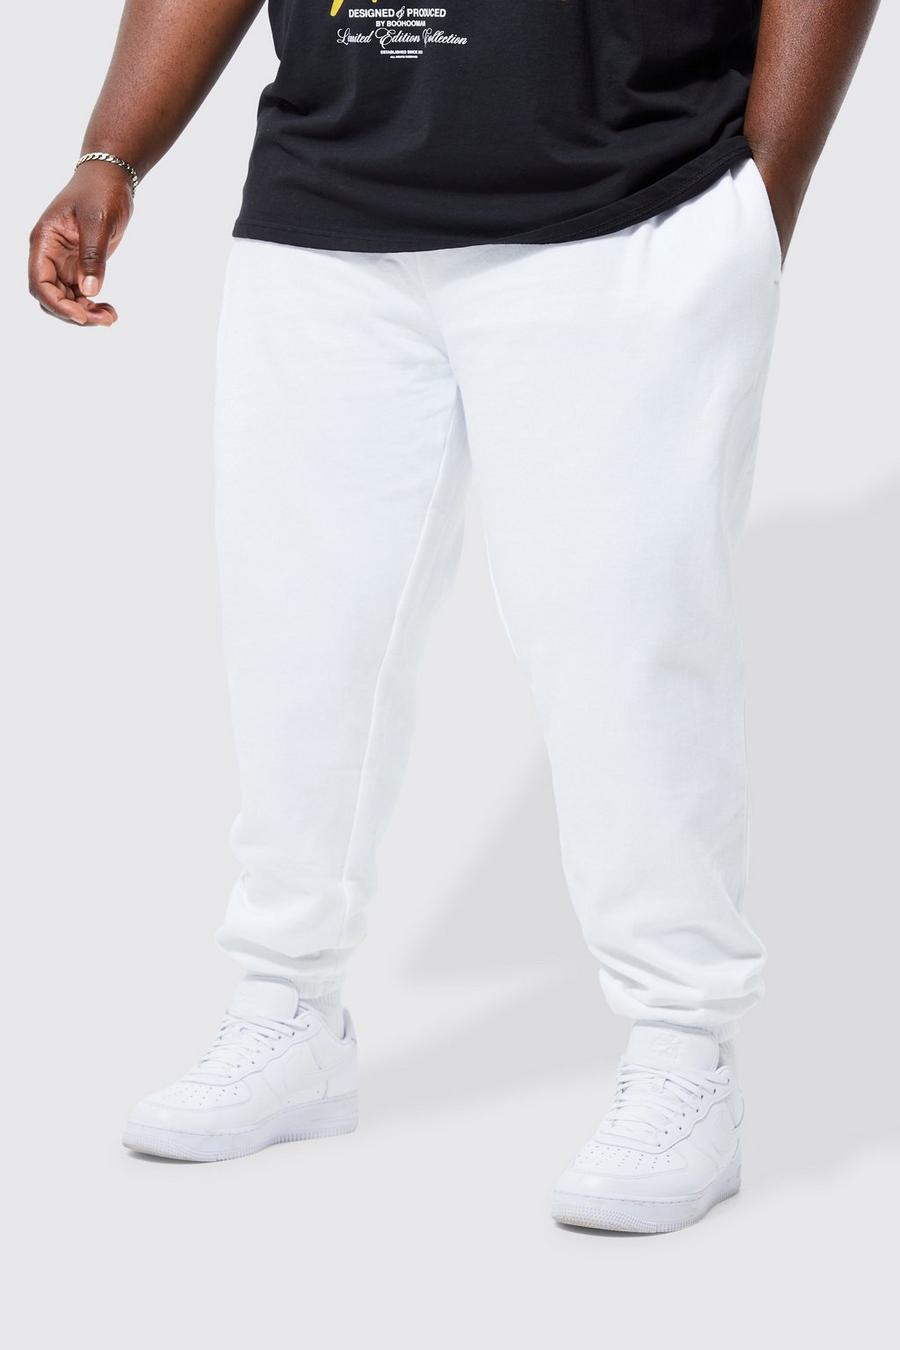 Pantaloni tuta Plus Size Basic, White image number 1